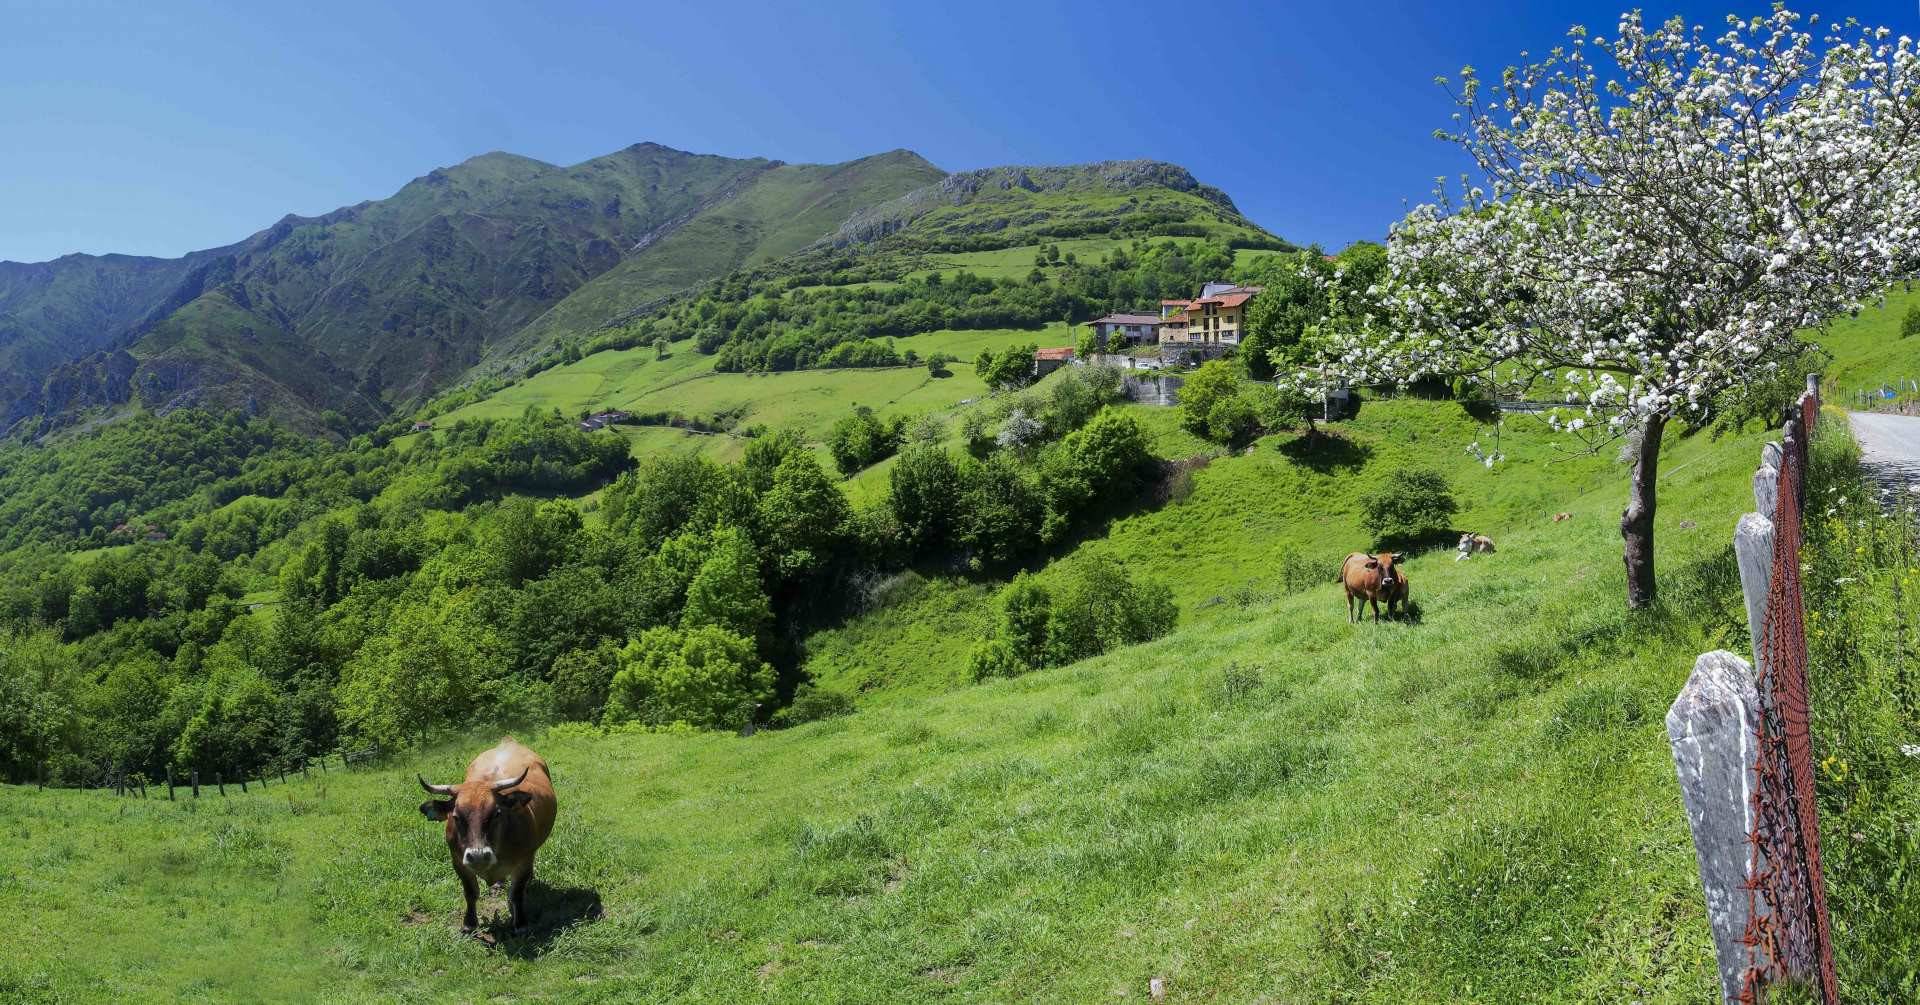 Gamonéu de Onís, el entorno donde nace uno de los mejores quesos asturianos. Foto: ©Juanjo Arrojo. Turismo de Asturias